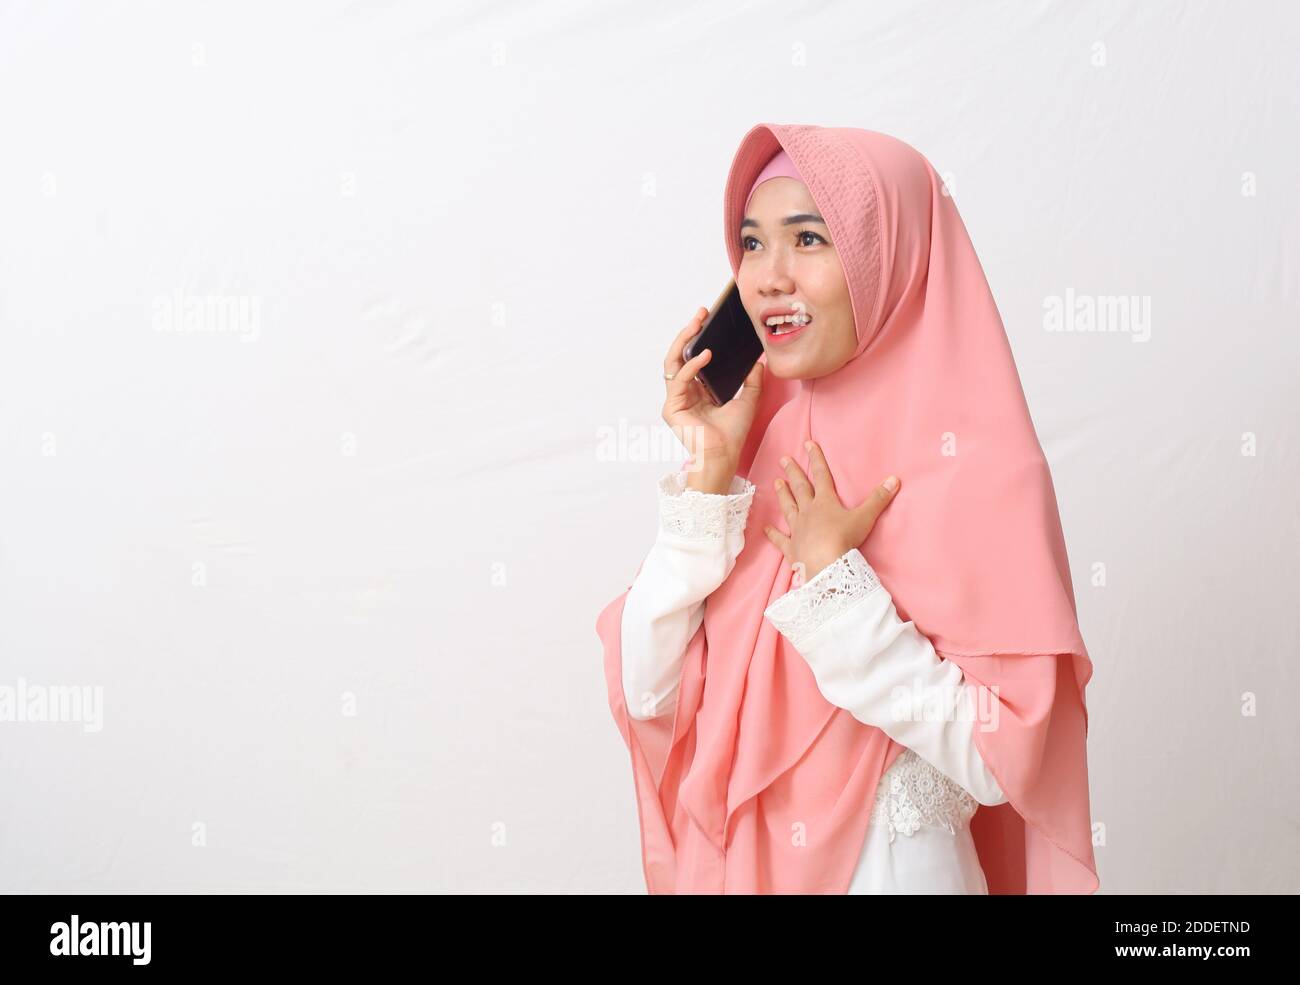 Un ritratto di felice musulmana asiatica che indossa un velo o un hijab mentre si parla al telefono, avendo una bella conversazione con qualcuno. Isolato su bianco Foto Stock